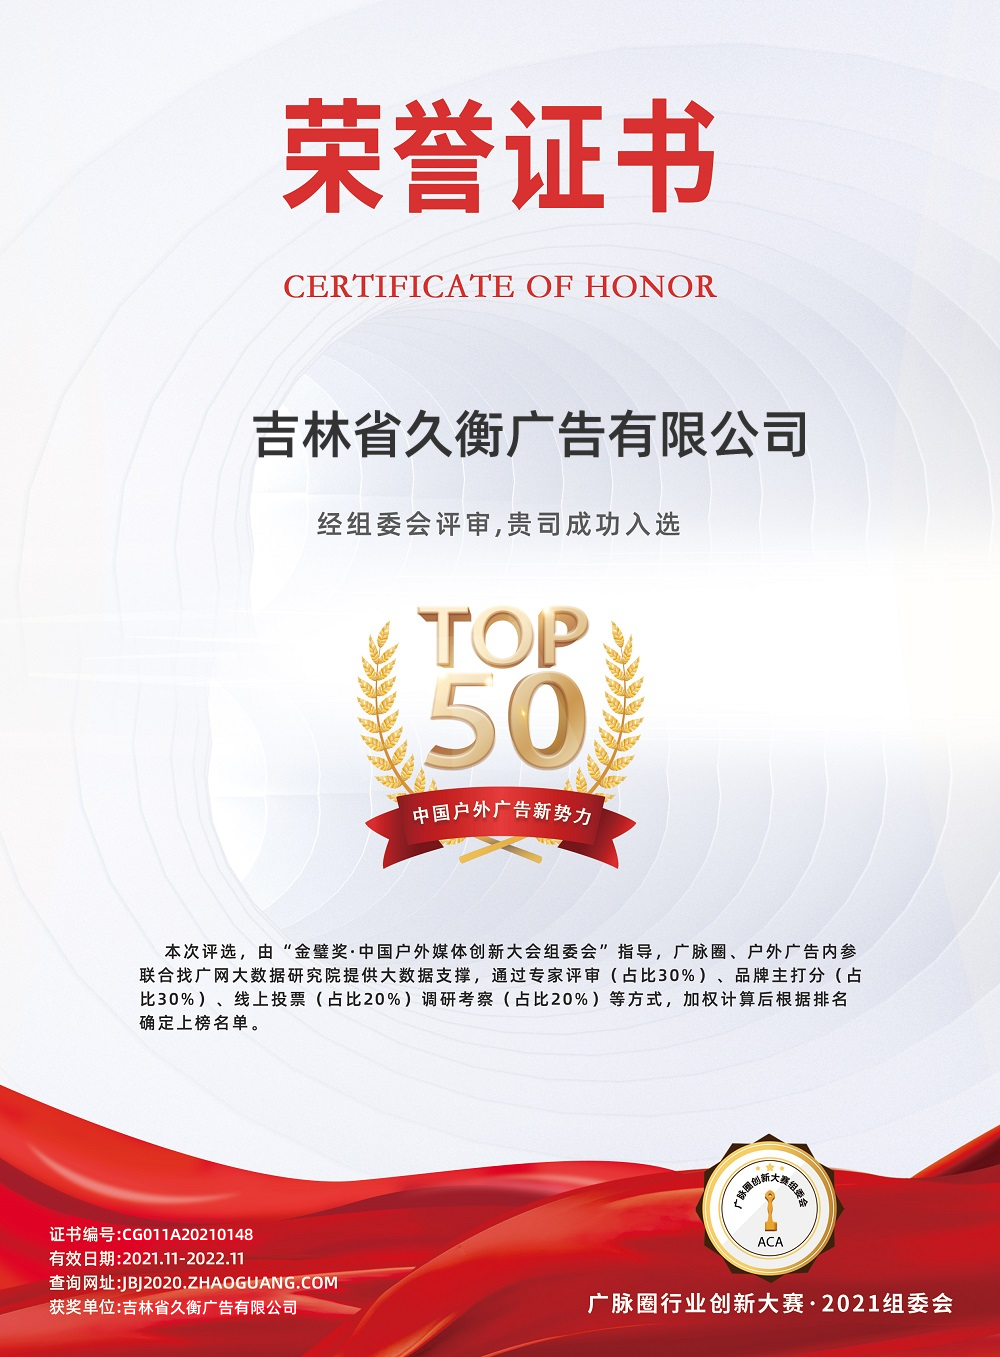 2020-2021年度中国户外广告新势力TOP50